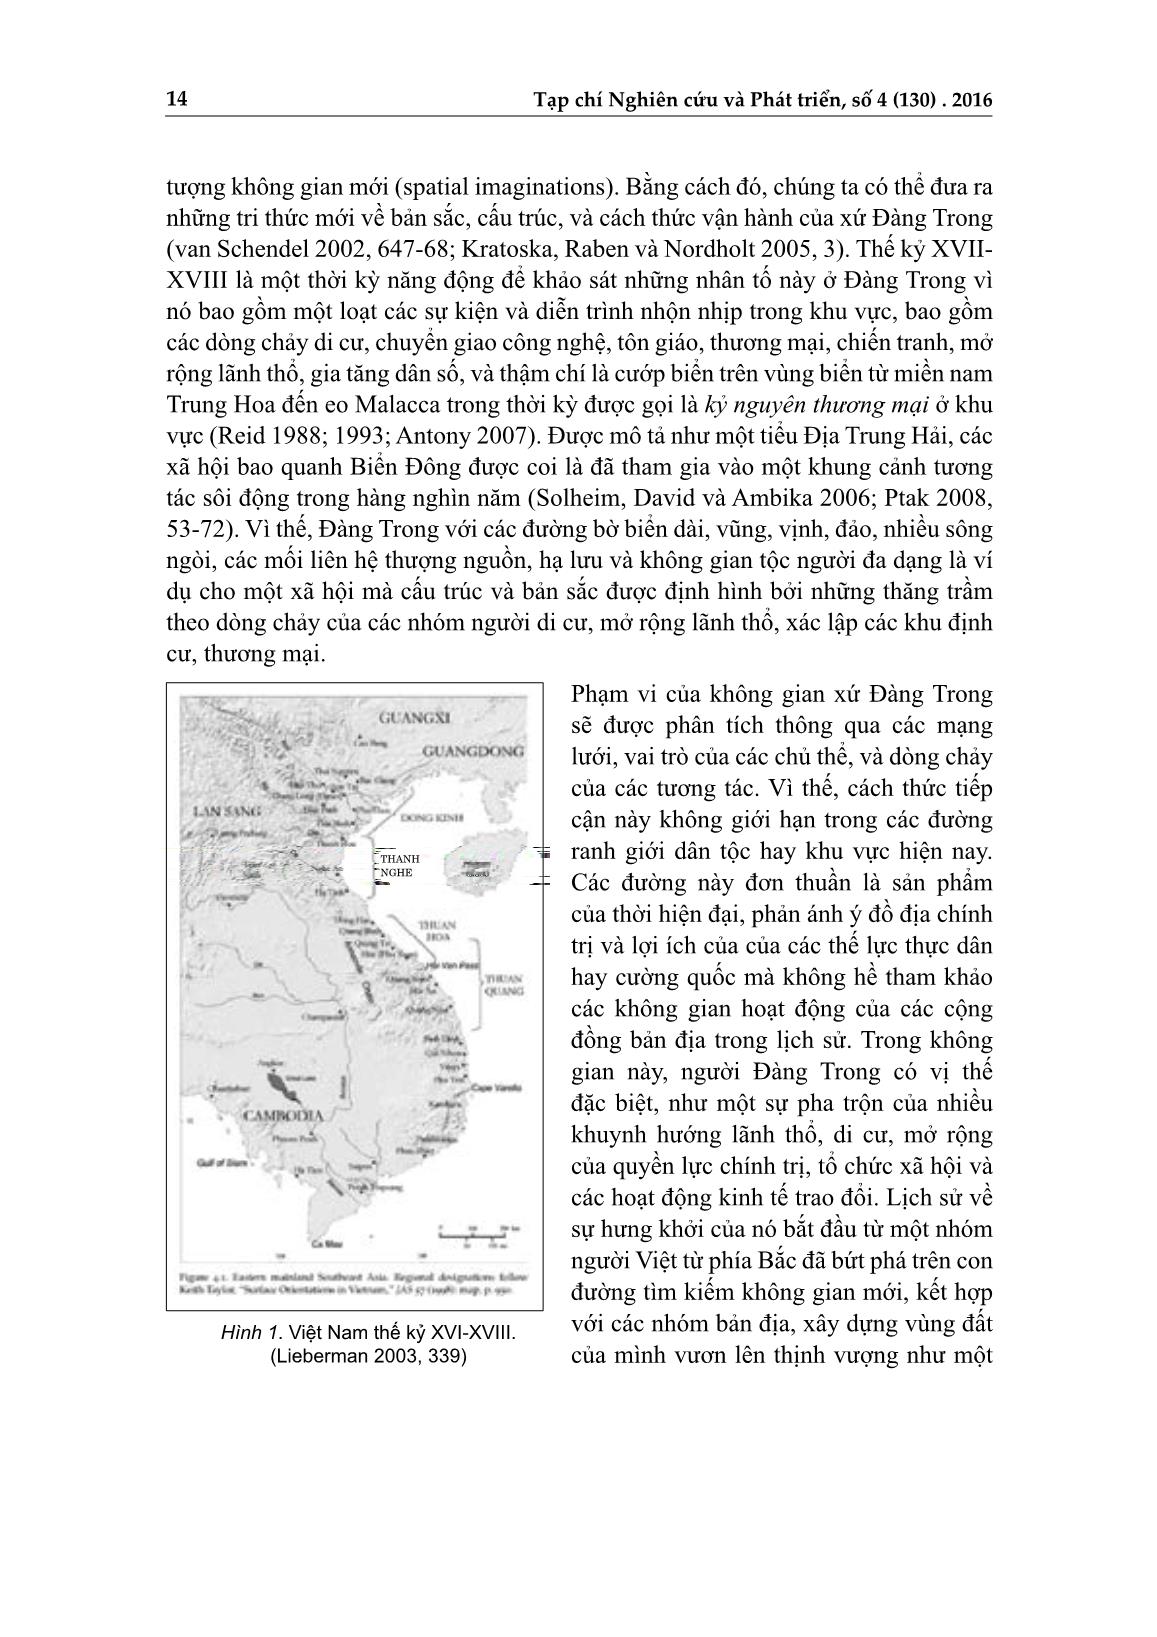 Tái định vị xứ Đàng trong trong không gian Đông Á và Đông Nam Á, thế kỷ XVI-XVIII trang 3